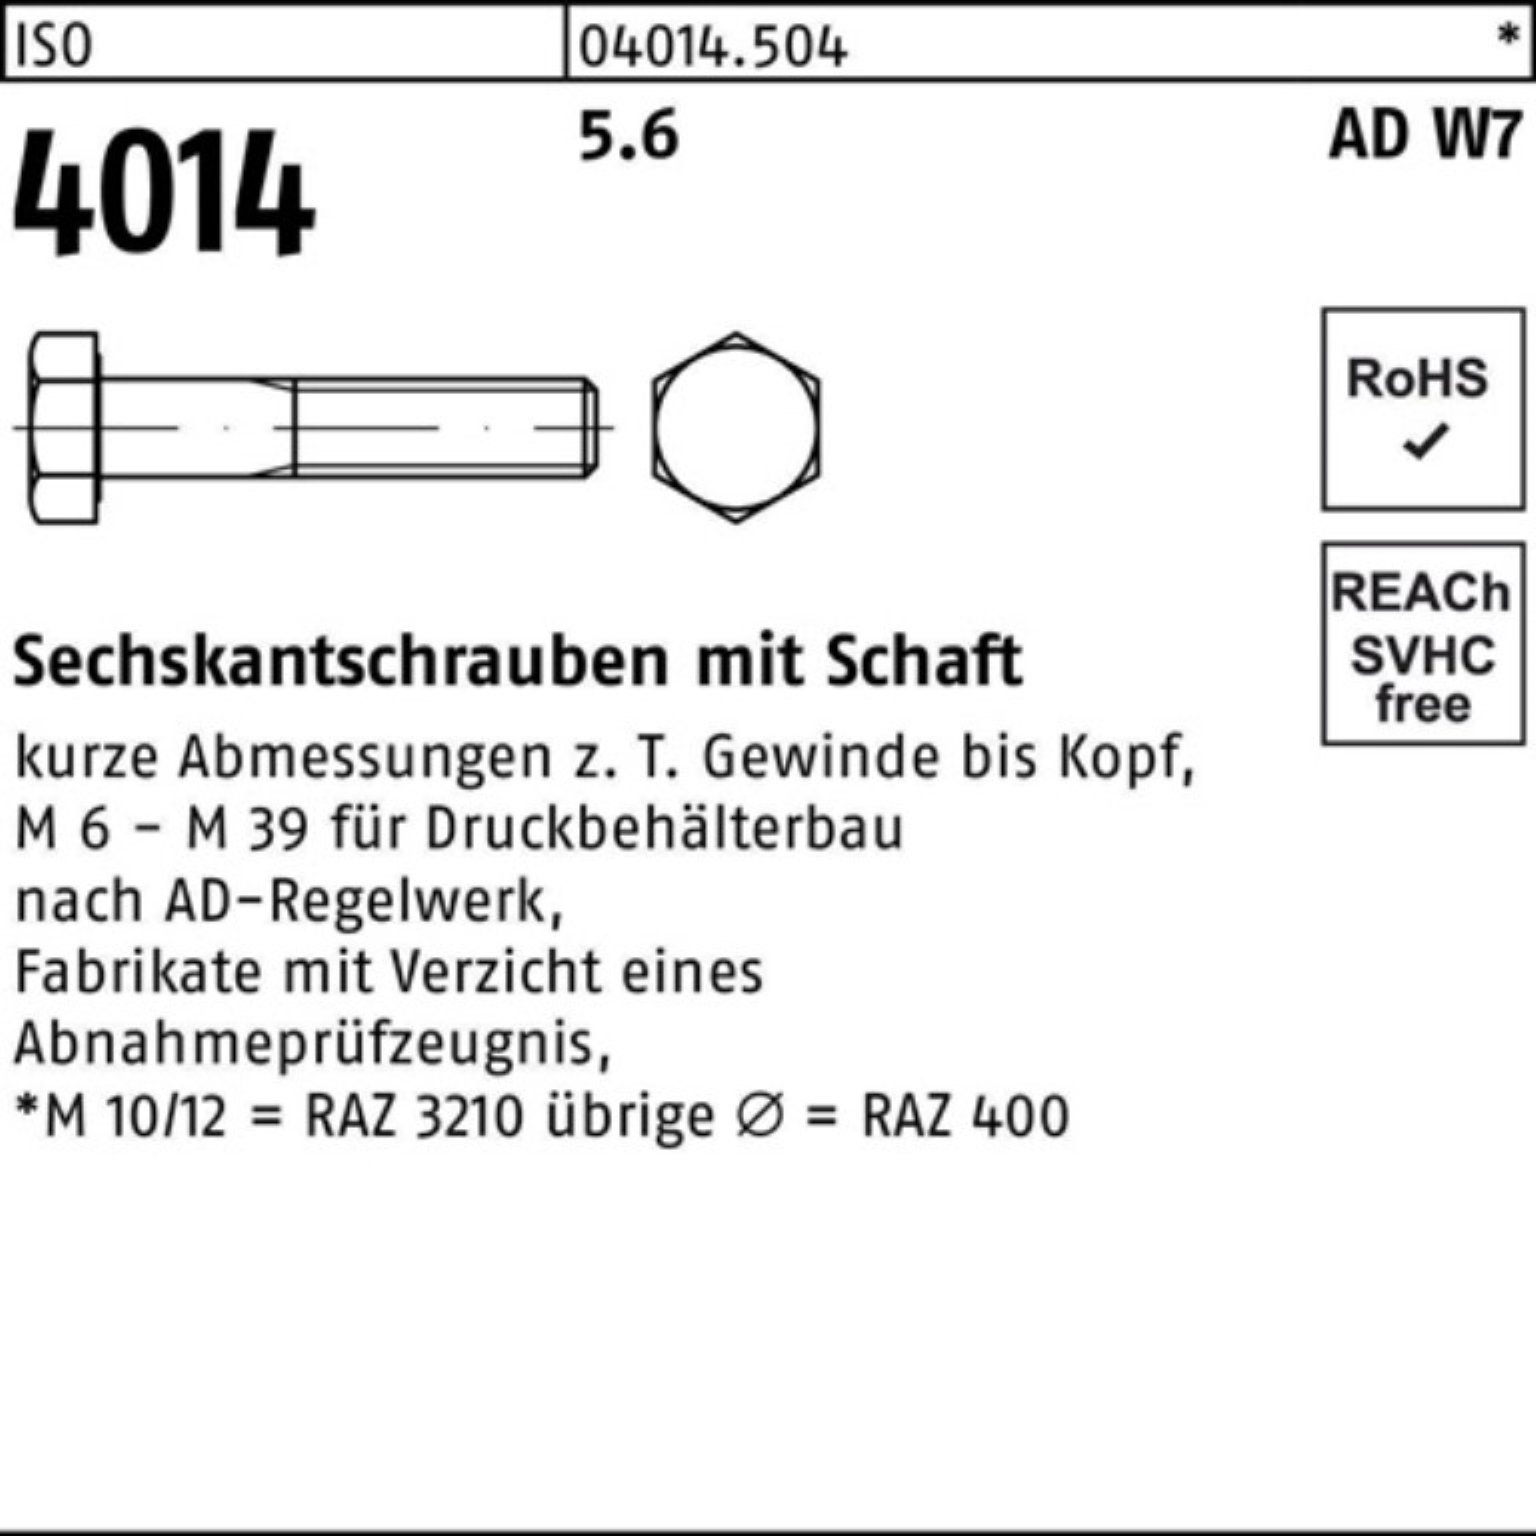 Schaft 5.6 M39x Stück 1 Sechskantschraube Sechskantschraube 150 100er ISO Pack 4014 W7 Bufab